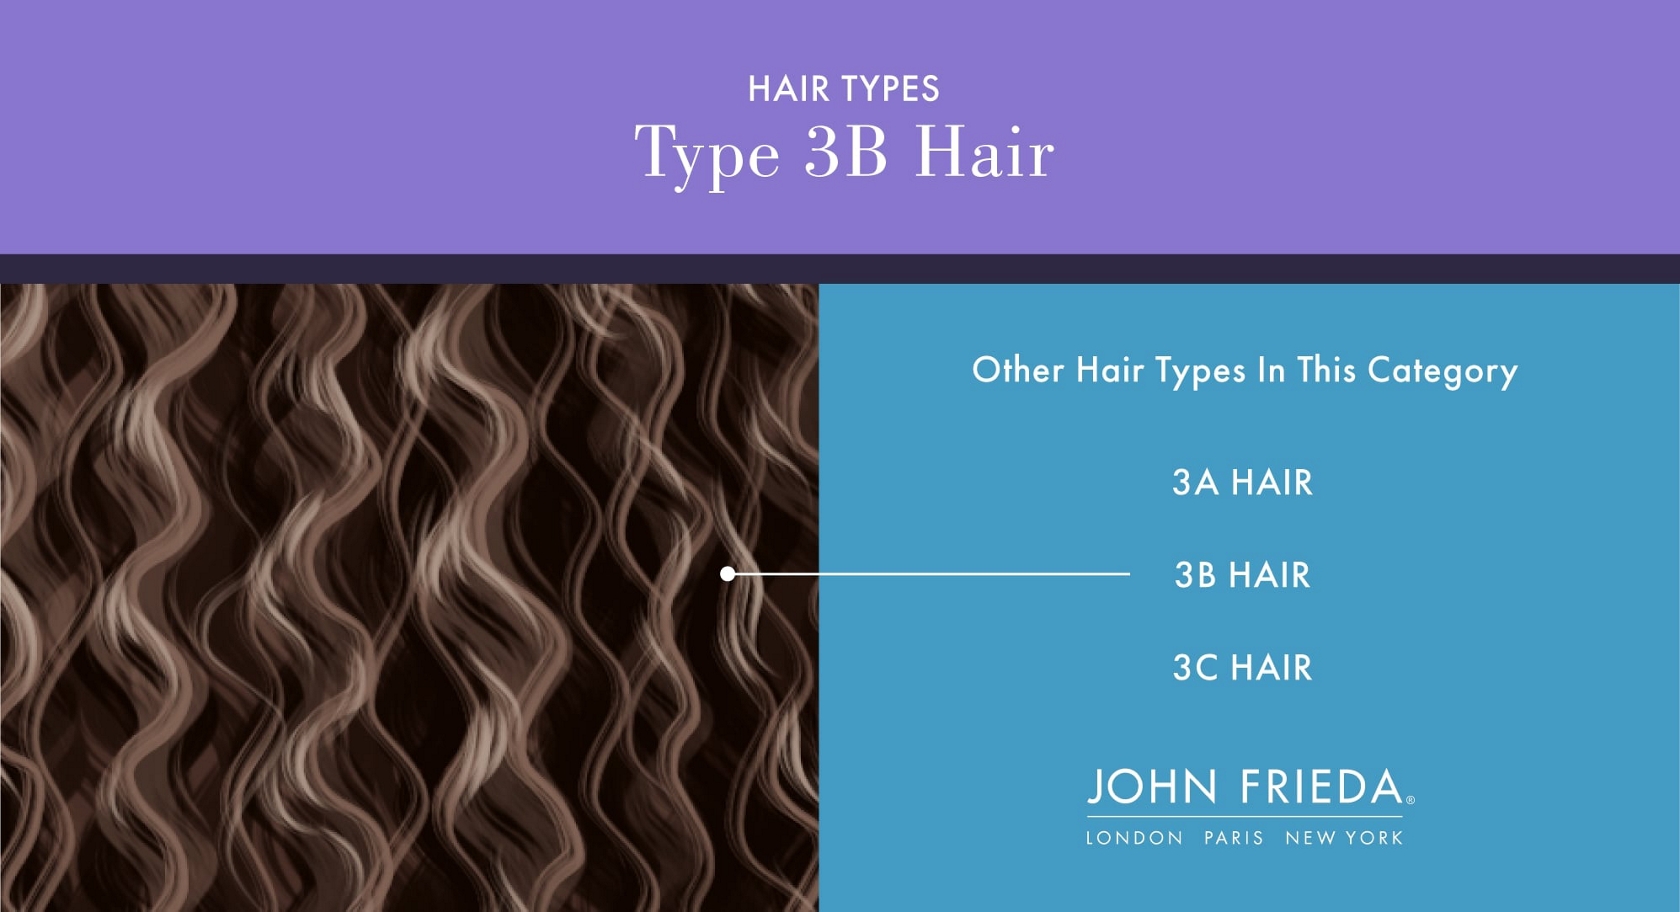 3B Hair Type | Hair Care by John Frieda